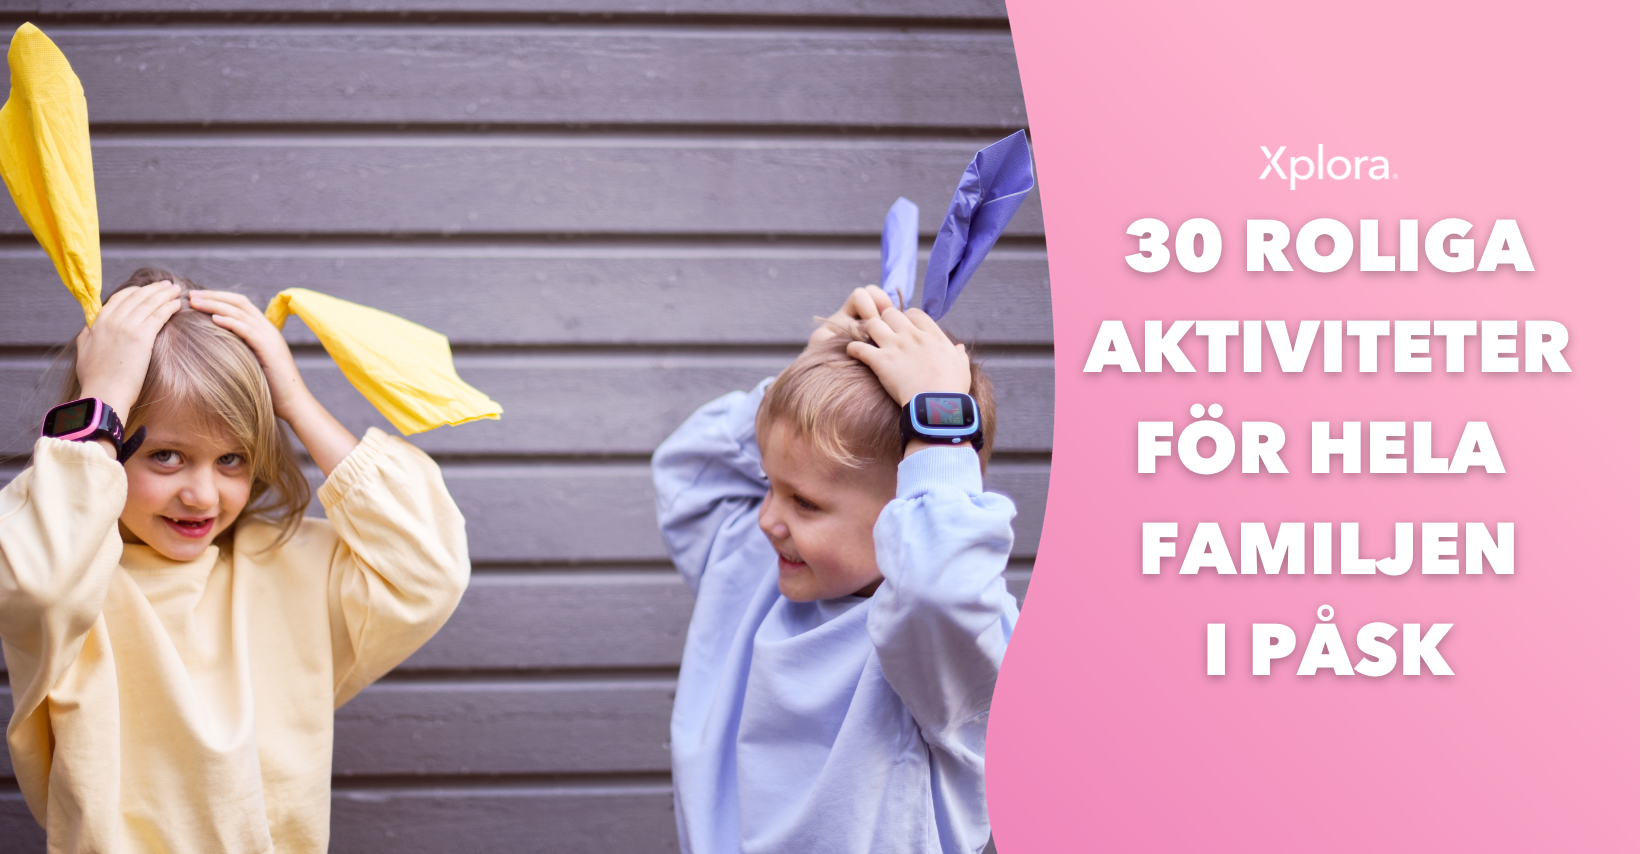 30 roliga påskaktiviteter för hela familjen!